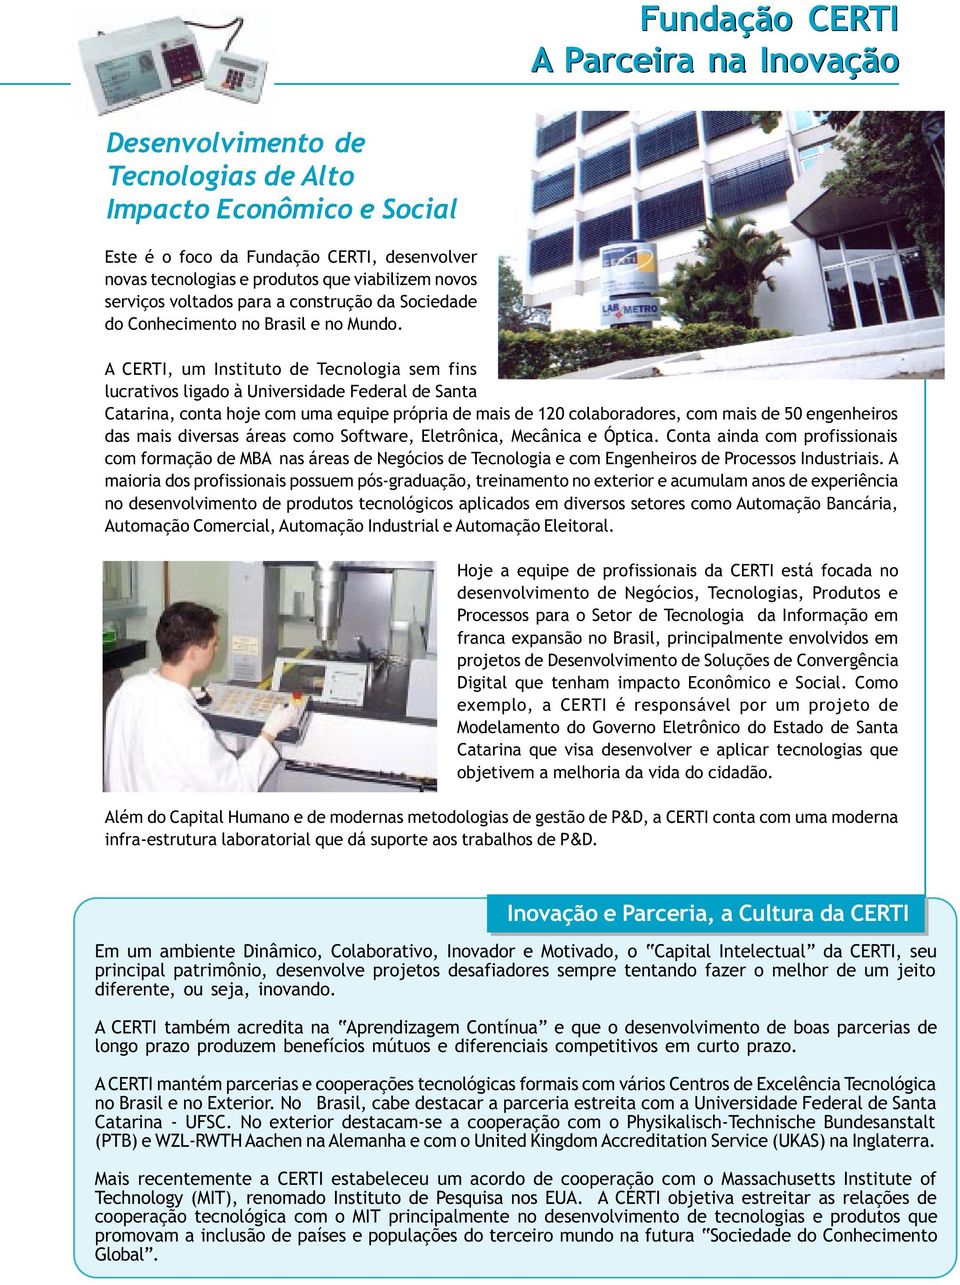 A CERTI, um Instituto de Tecnologia sem fins lucrativos ligado à Universidade Federal de Santa Catarina, conta hoje com uma equipe própria de mais de 120 colaboradores, com mais de 50 engenheiros das